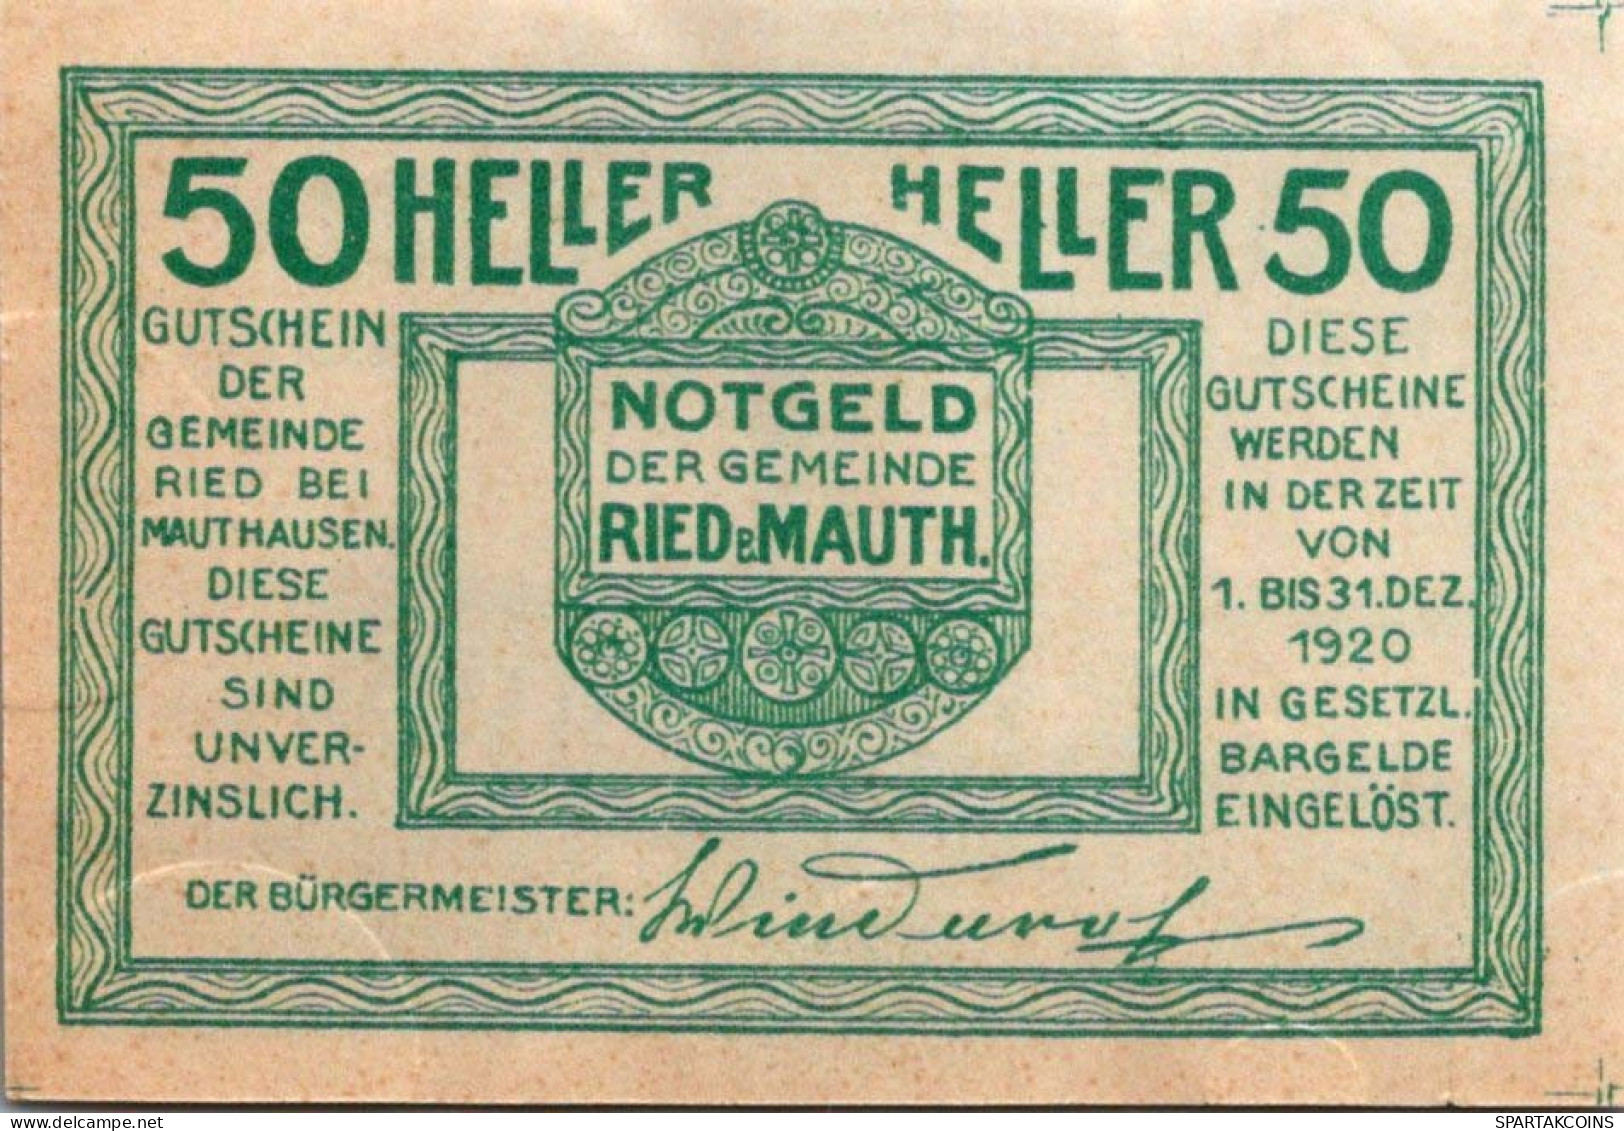 50 HELLER 1920 Stadt Ried Bei Mauthausen Österreich Notgeld Banknote #PD978 - [11] Emissions Locales